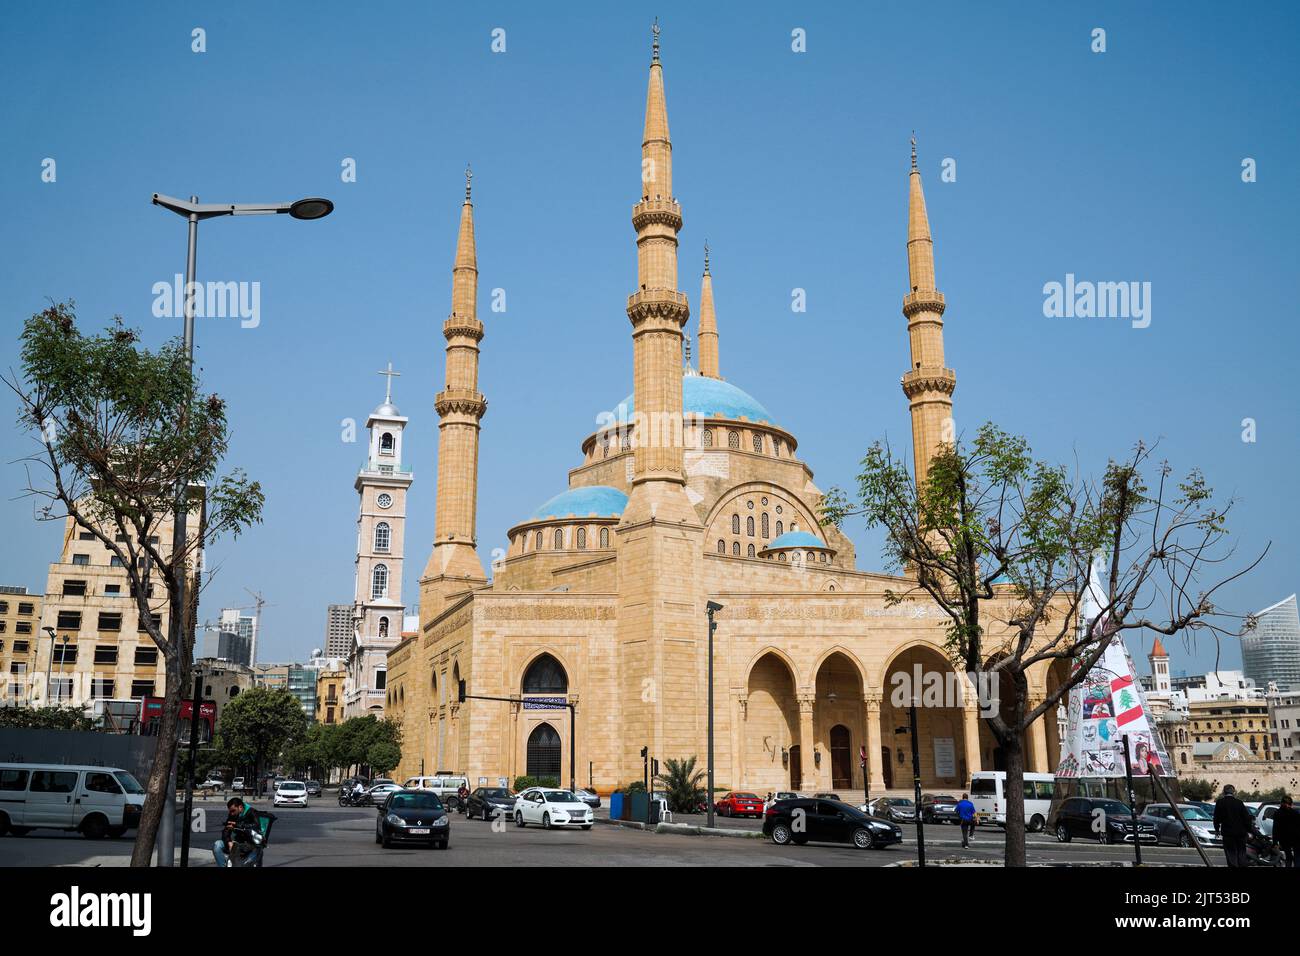 Beirut, Líbano : Mezquita Musulmana Mohammad Al-Amin Sunni (también conocida como Mezquita Azul) y el campanario de la Catedral de San Jorge en la Plaza de los Mártires, en el centro de Beirut, Líbano Foto de stock